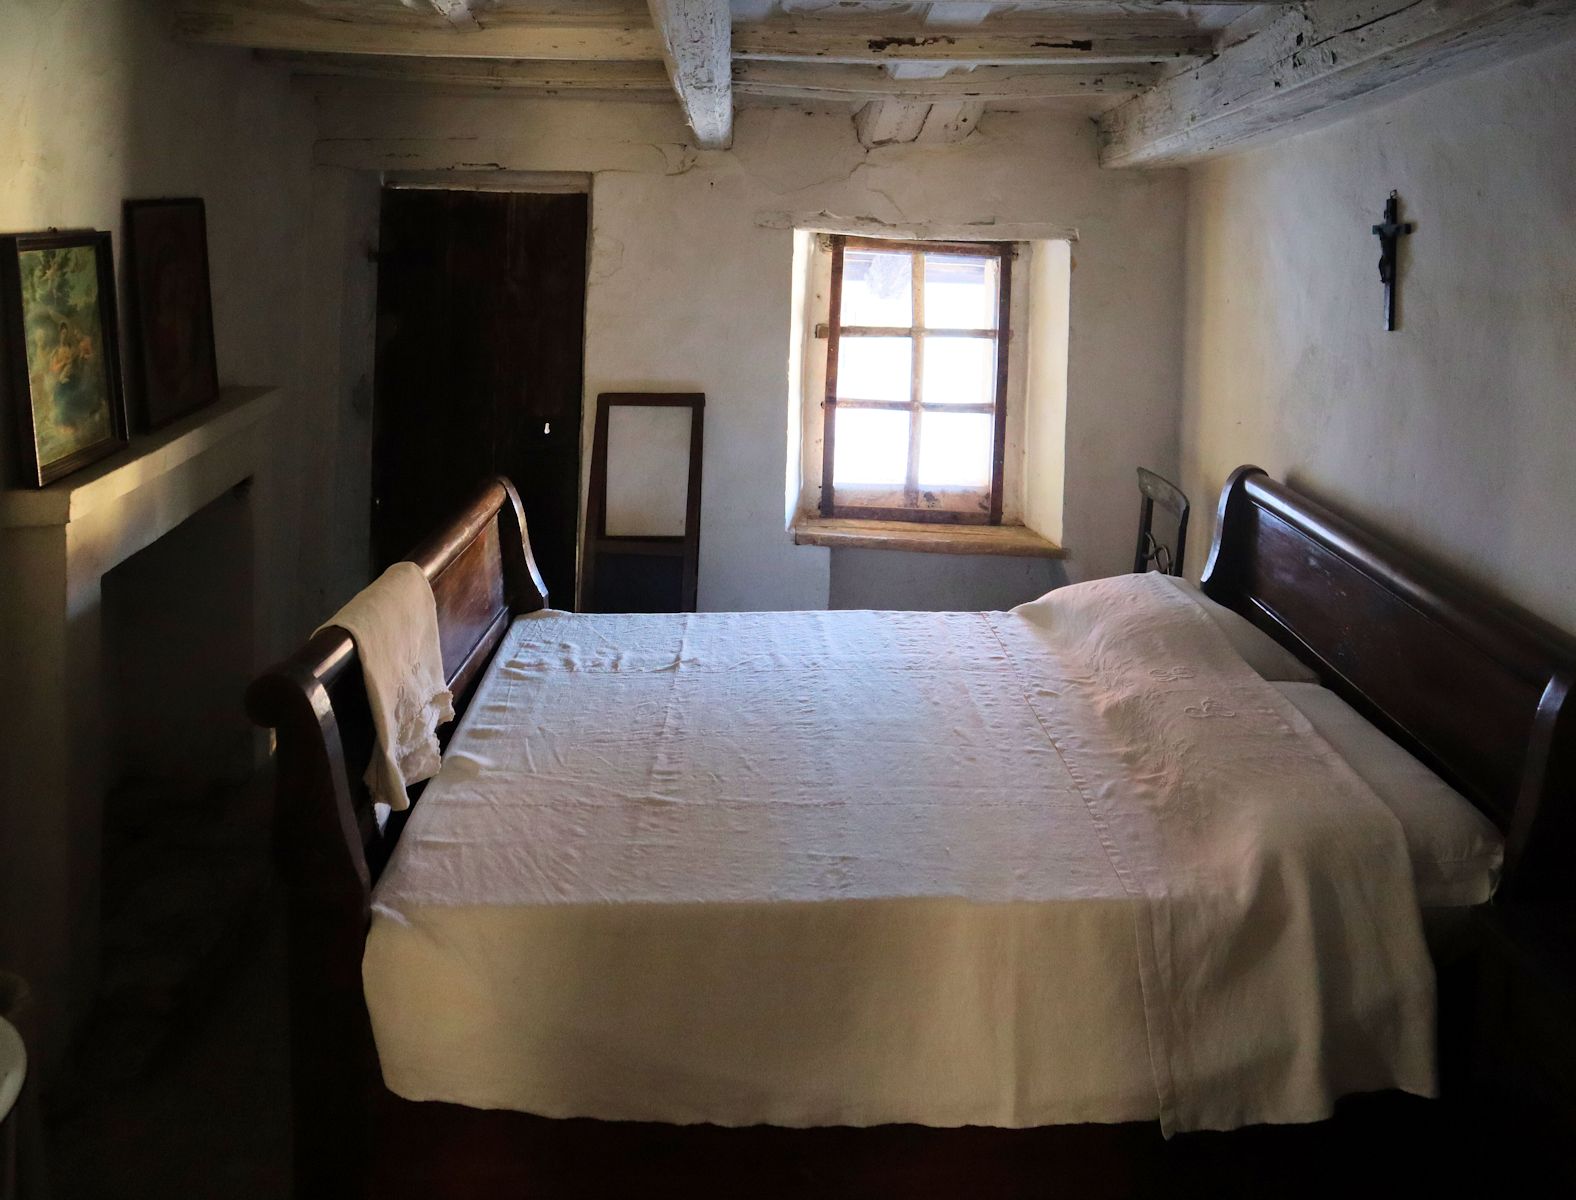 Zimmer von Mutter Margaretha Occhiena, in dem sie zusammen mit ihrer Schwiegermutter schlief, in Johannes' Geburtshaus